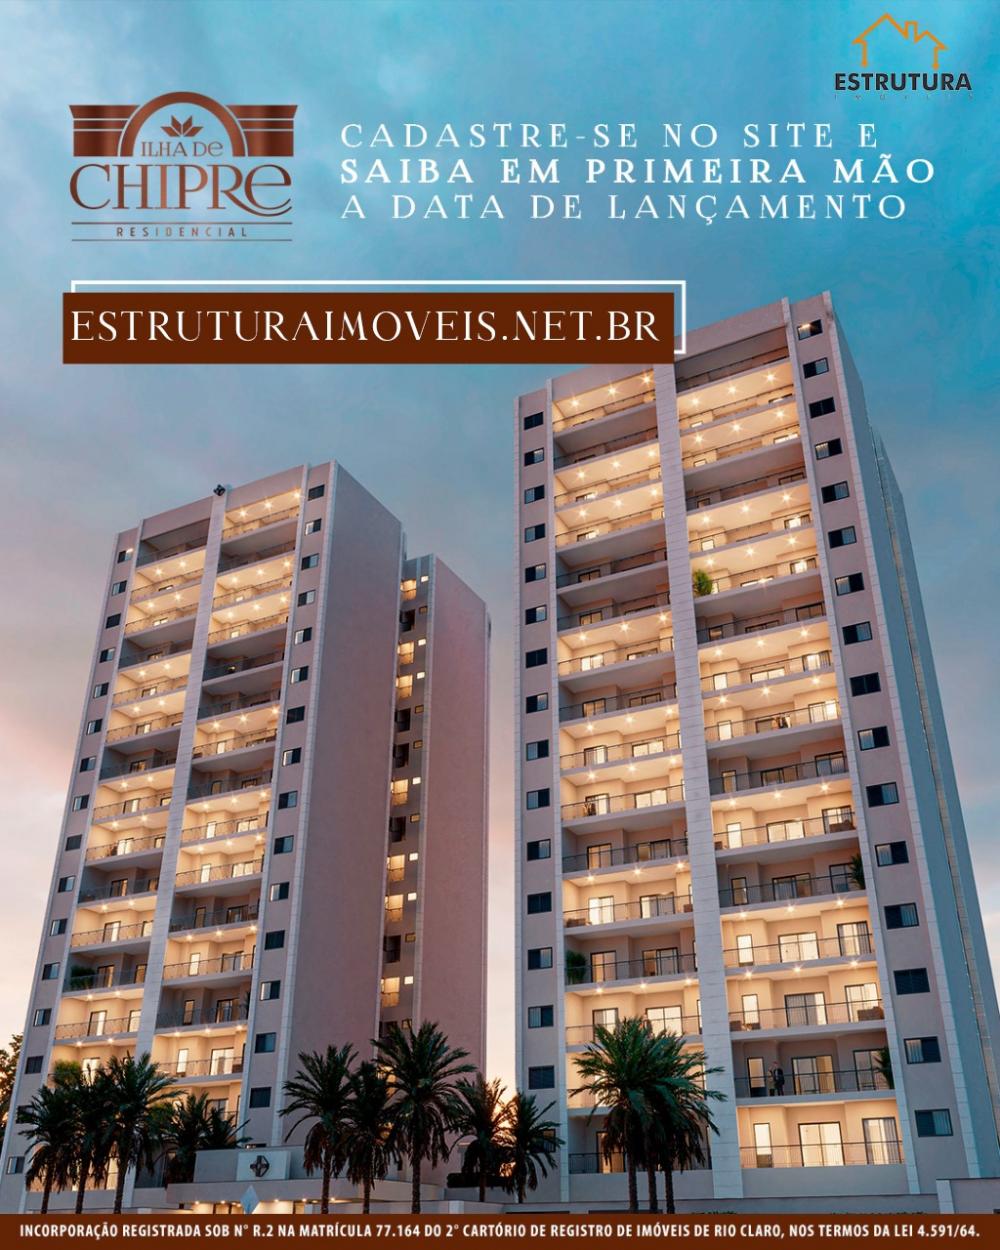 Comprar Residencial / Apartamento em Rio Claro - Foto 1